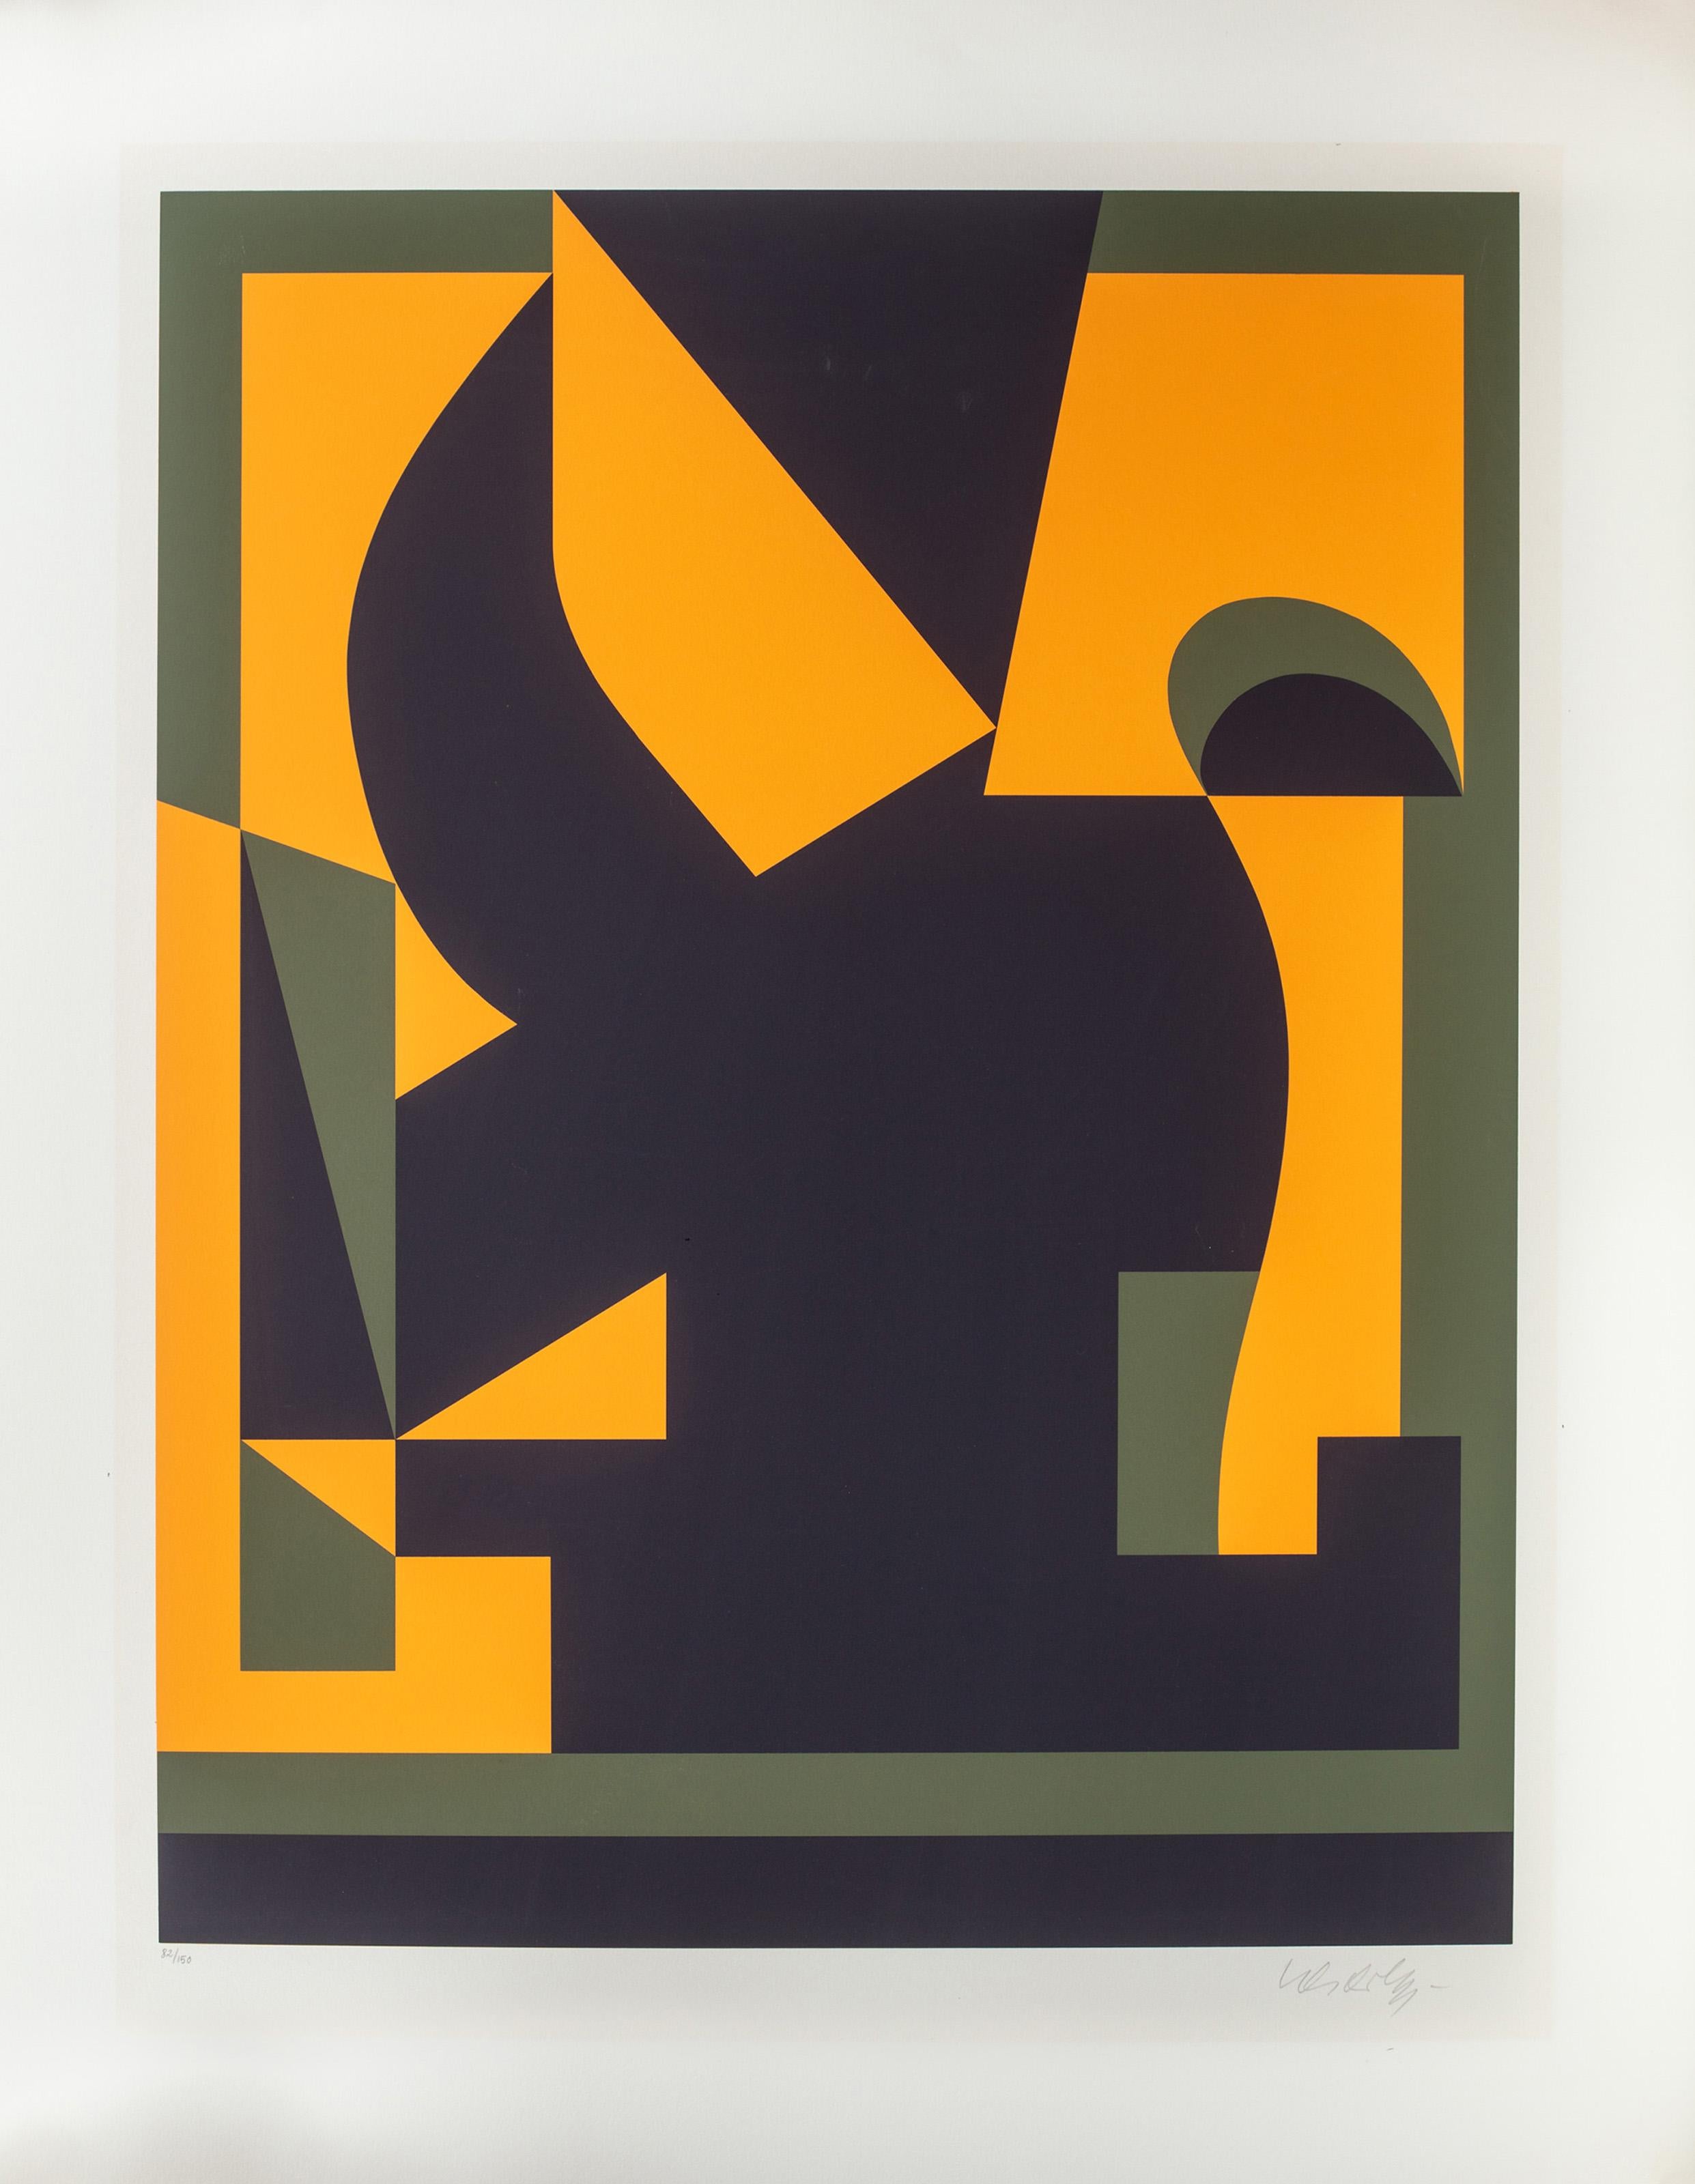 Bien que normalement reconnue pour ses compositions Op Art, cette lithographie de Victor Vasarely se prête davantage à l'abstraction géométrique. Vasarely utilise seulement trois couleurs pour créer une spirale audacieuse et indéchiffrable de